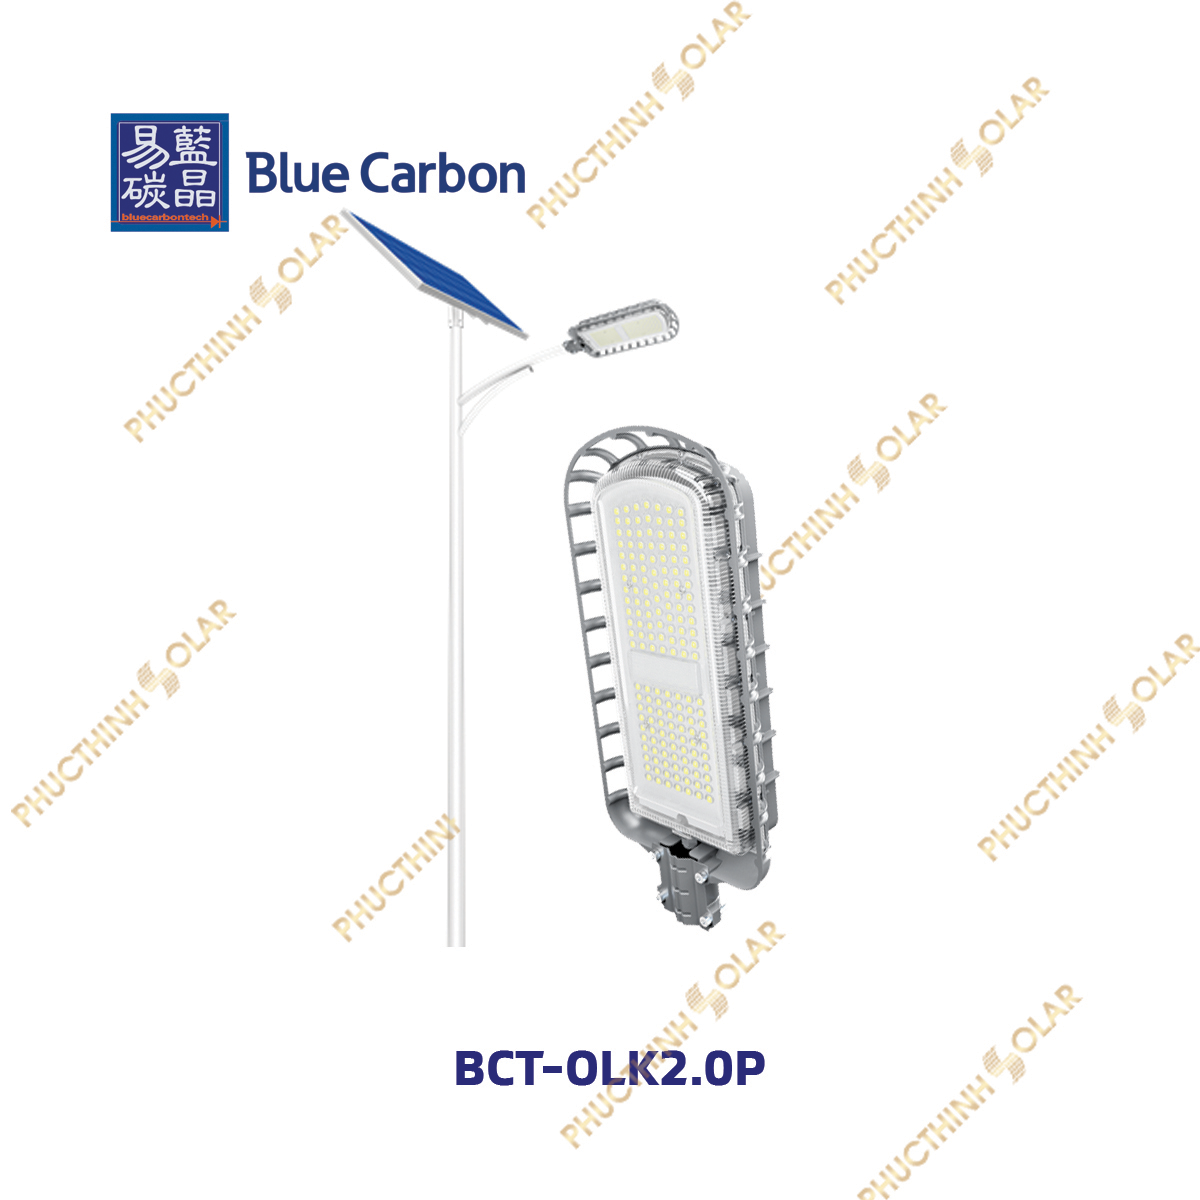 Blue Carbon – Đèn đường năng lượng mặt trời 56W BCT-OLK2.0P